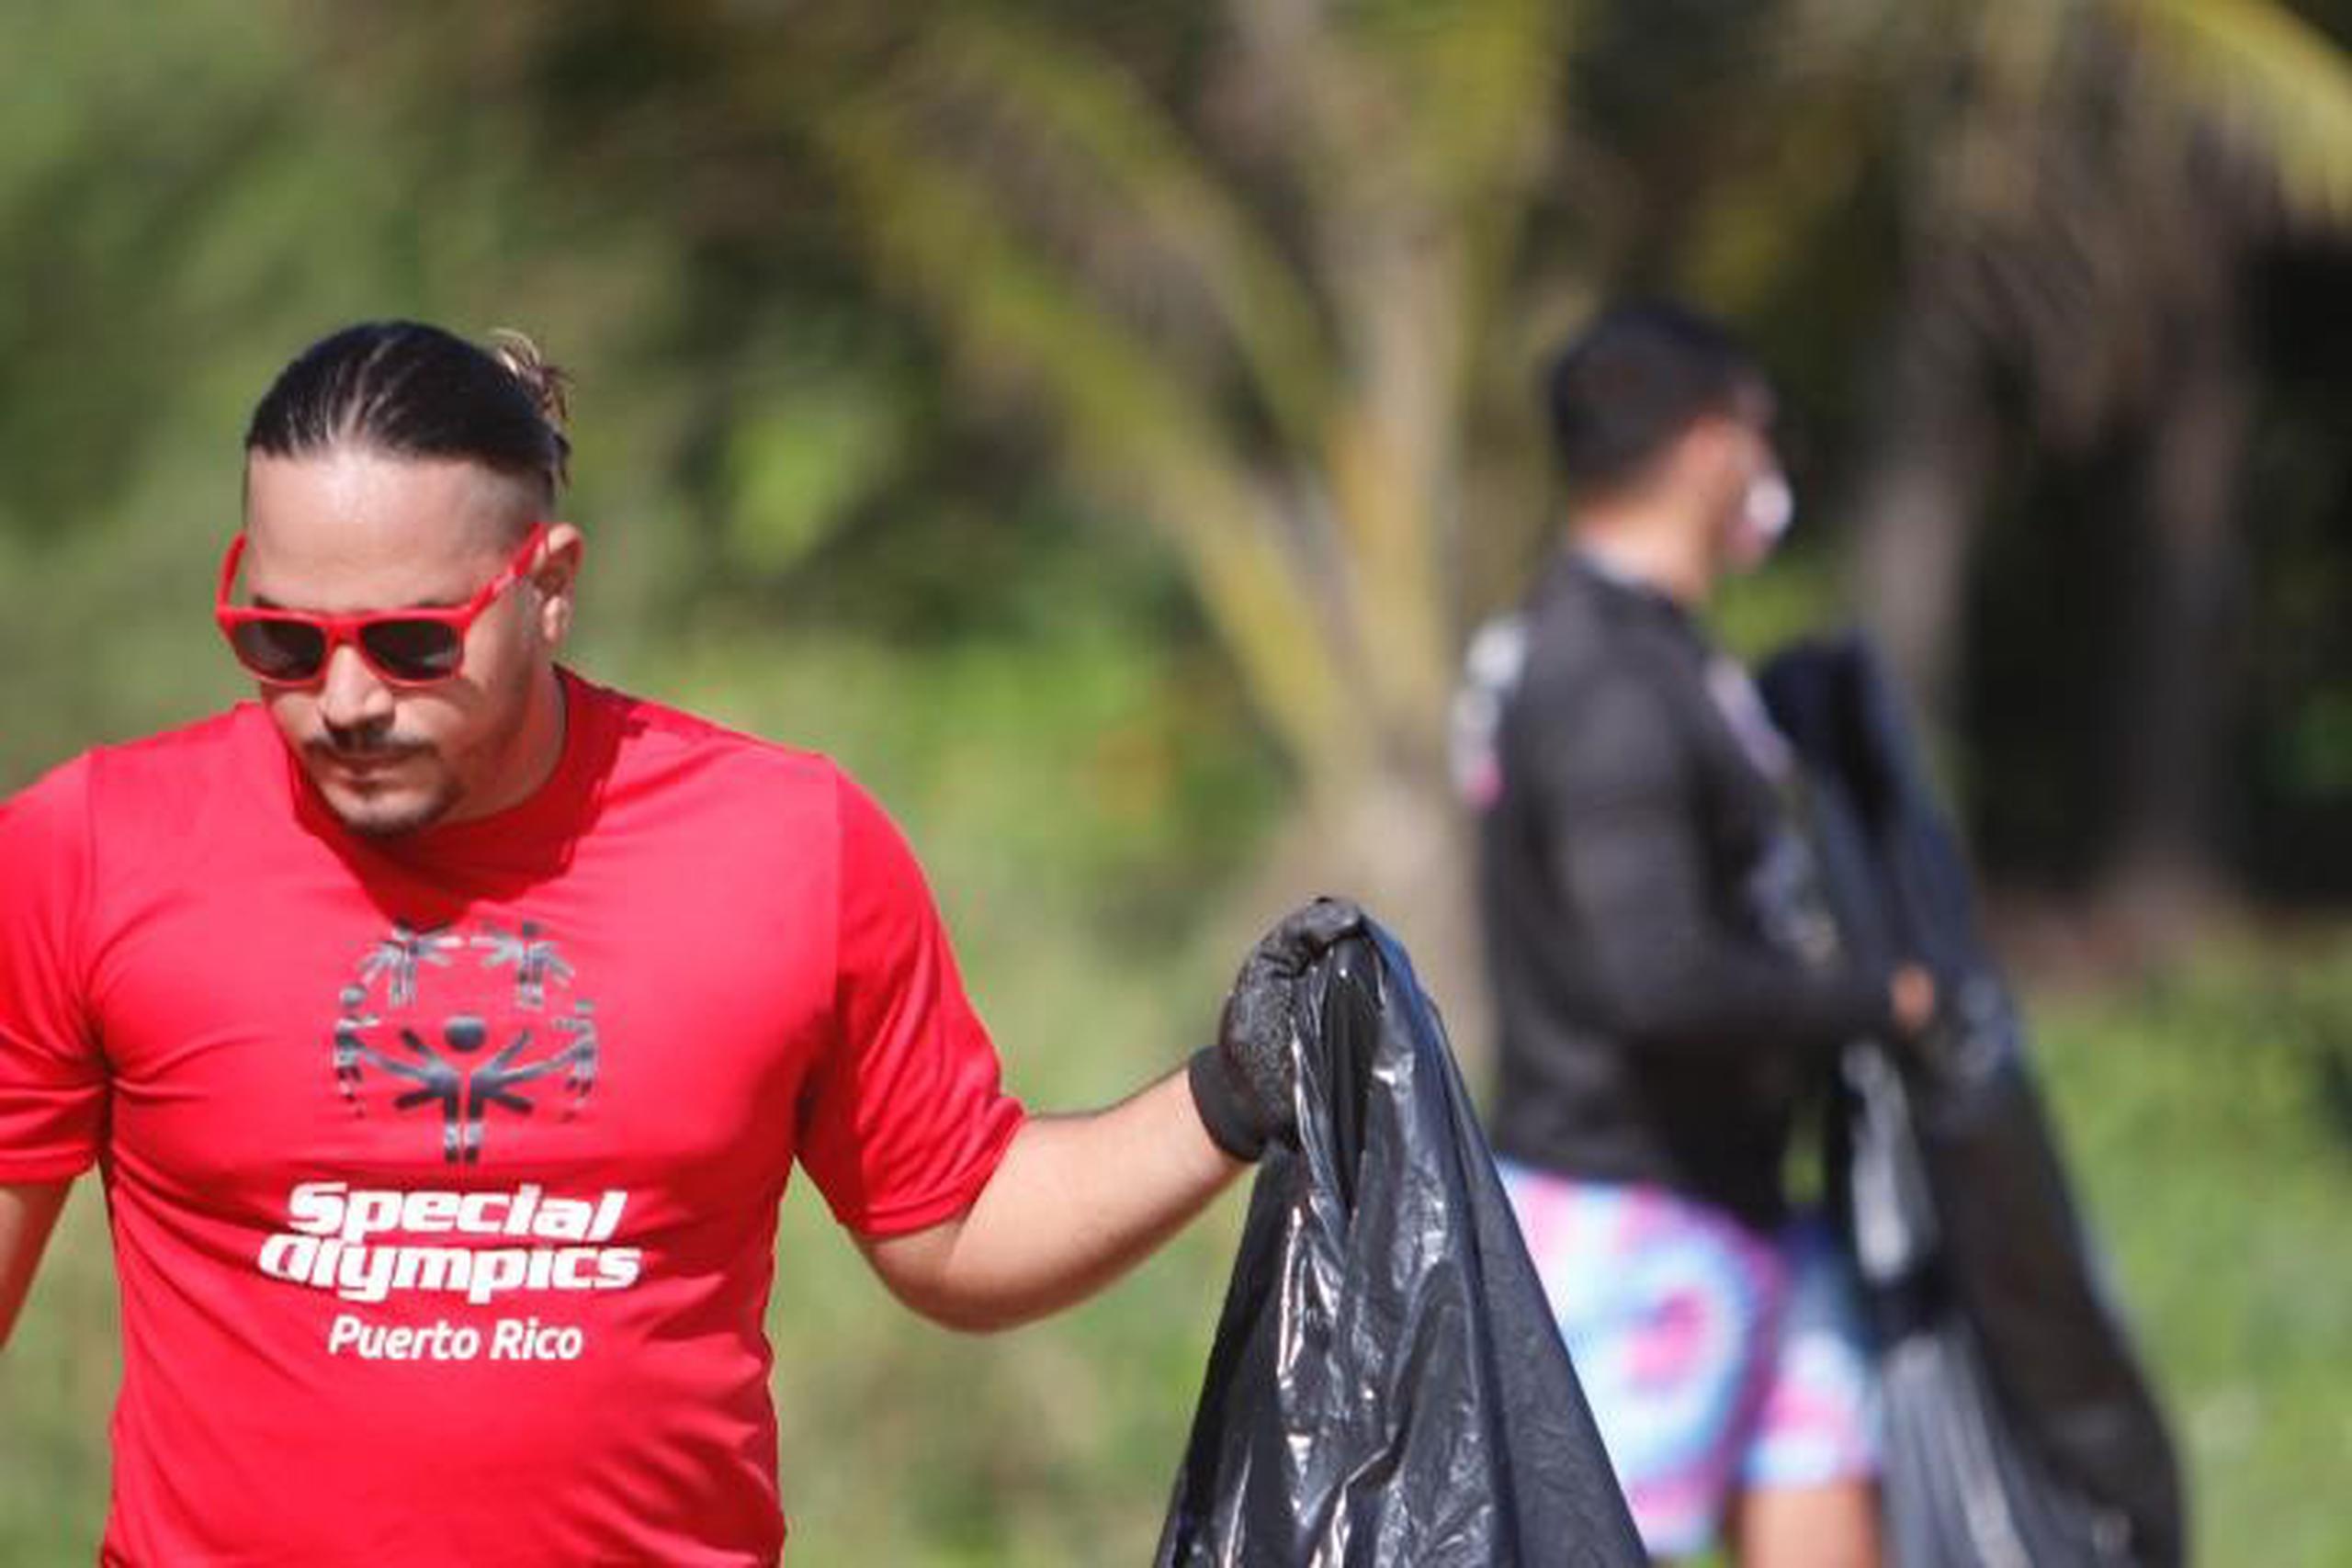 El atleta de SOPR, Wilbert Guzmán, durante la actividad.